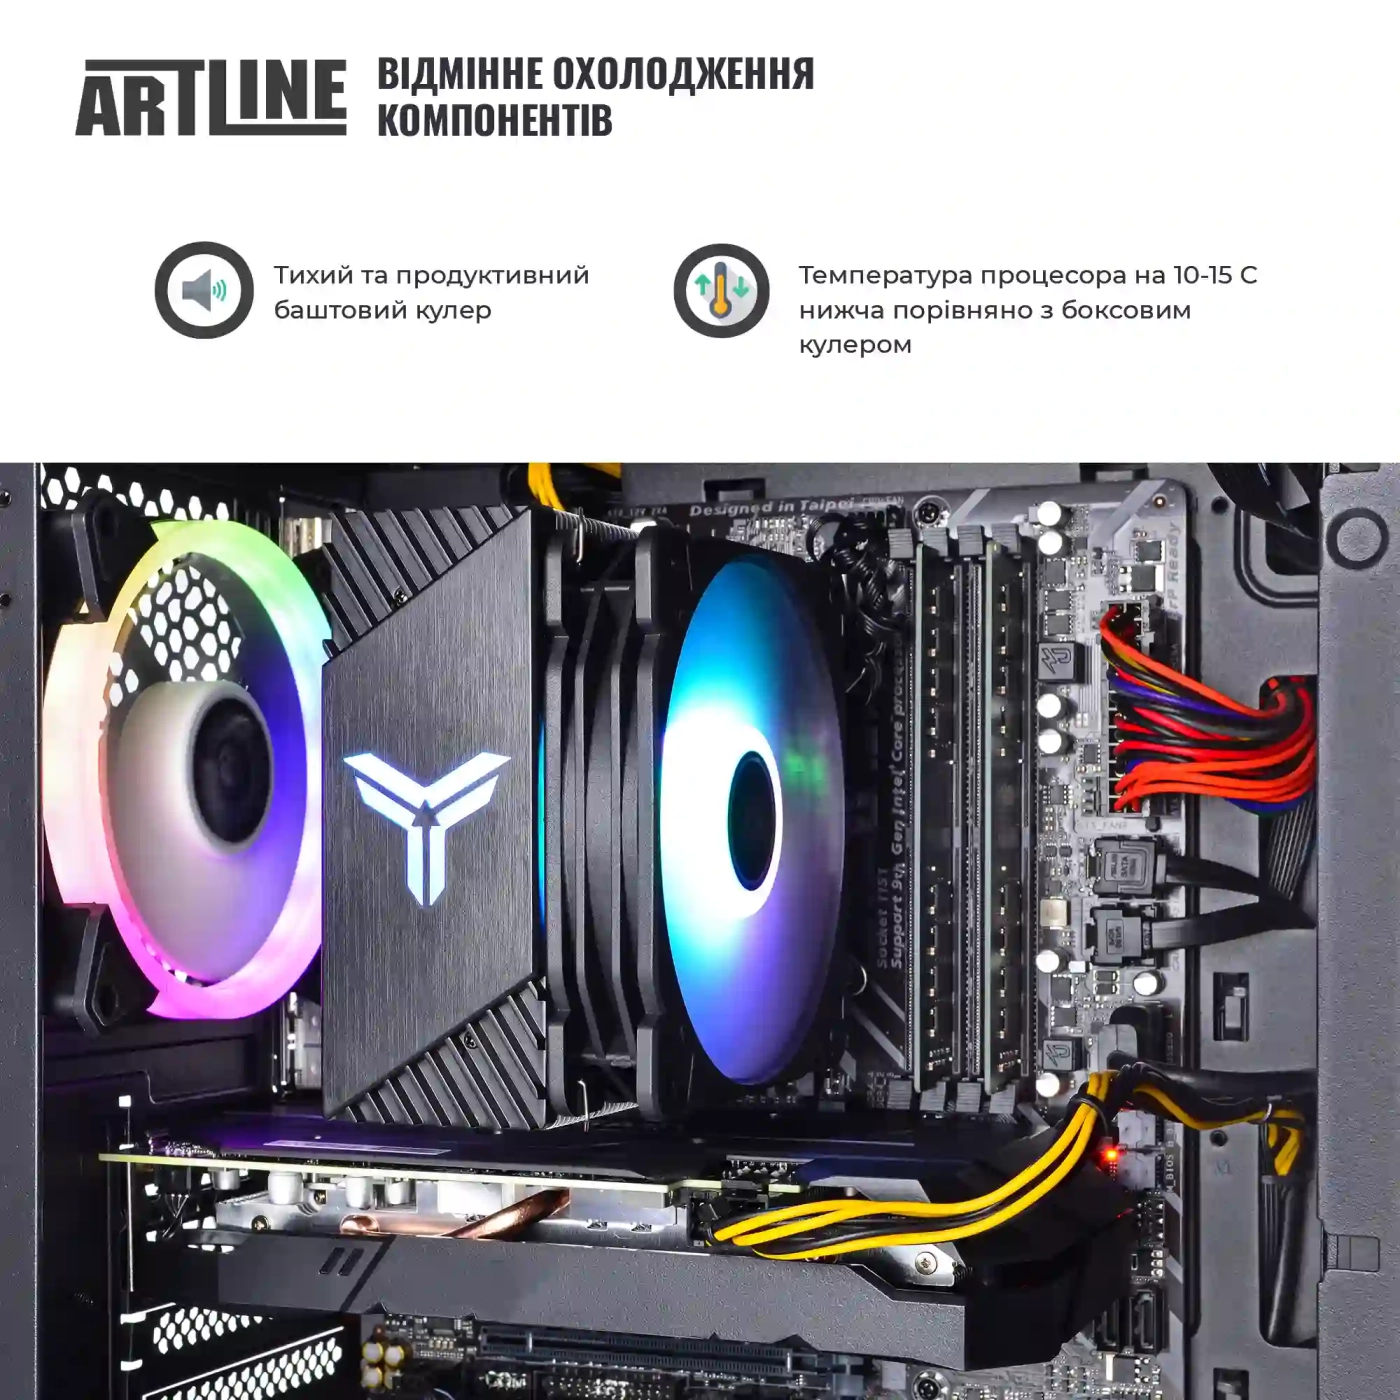 Купить Компьютер ARTLINE Gaming X49v14 - фото 3